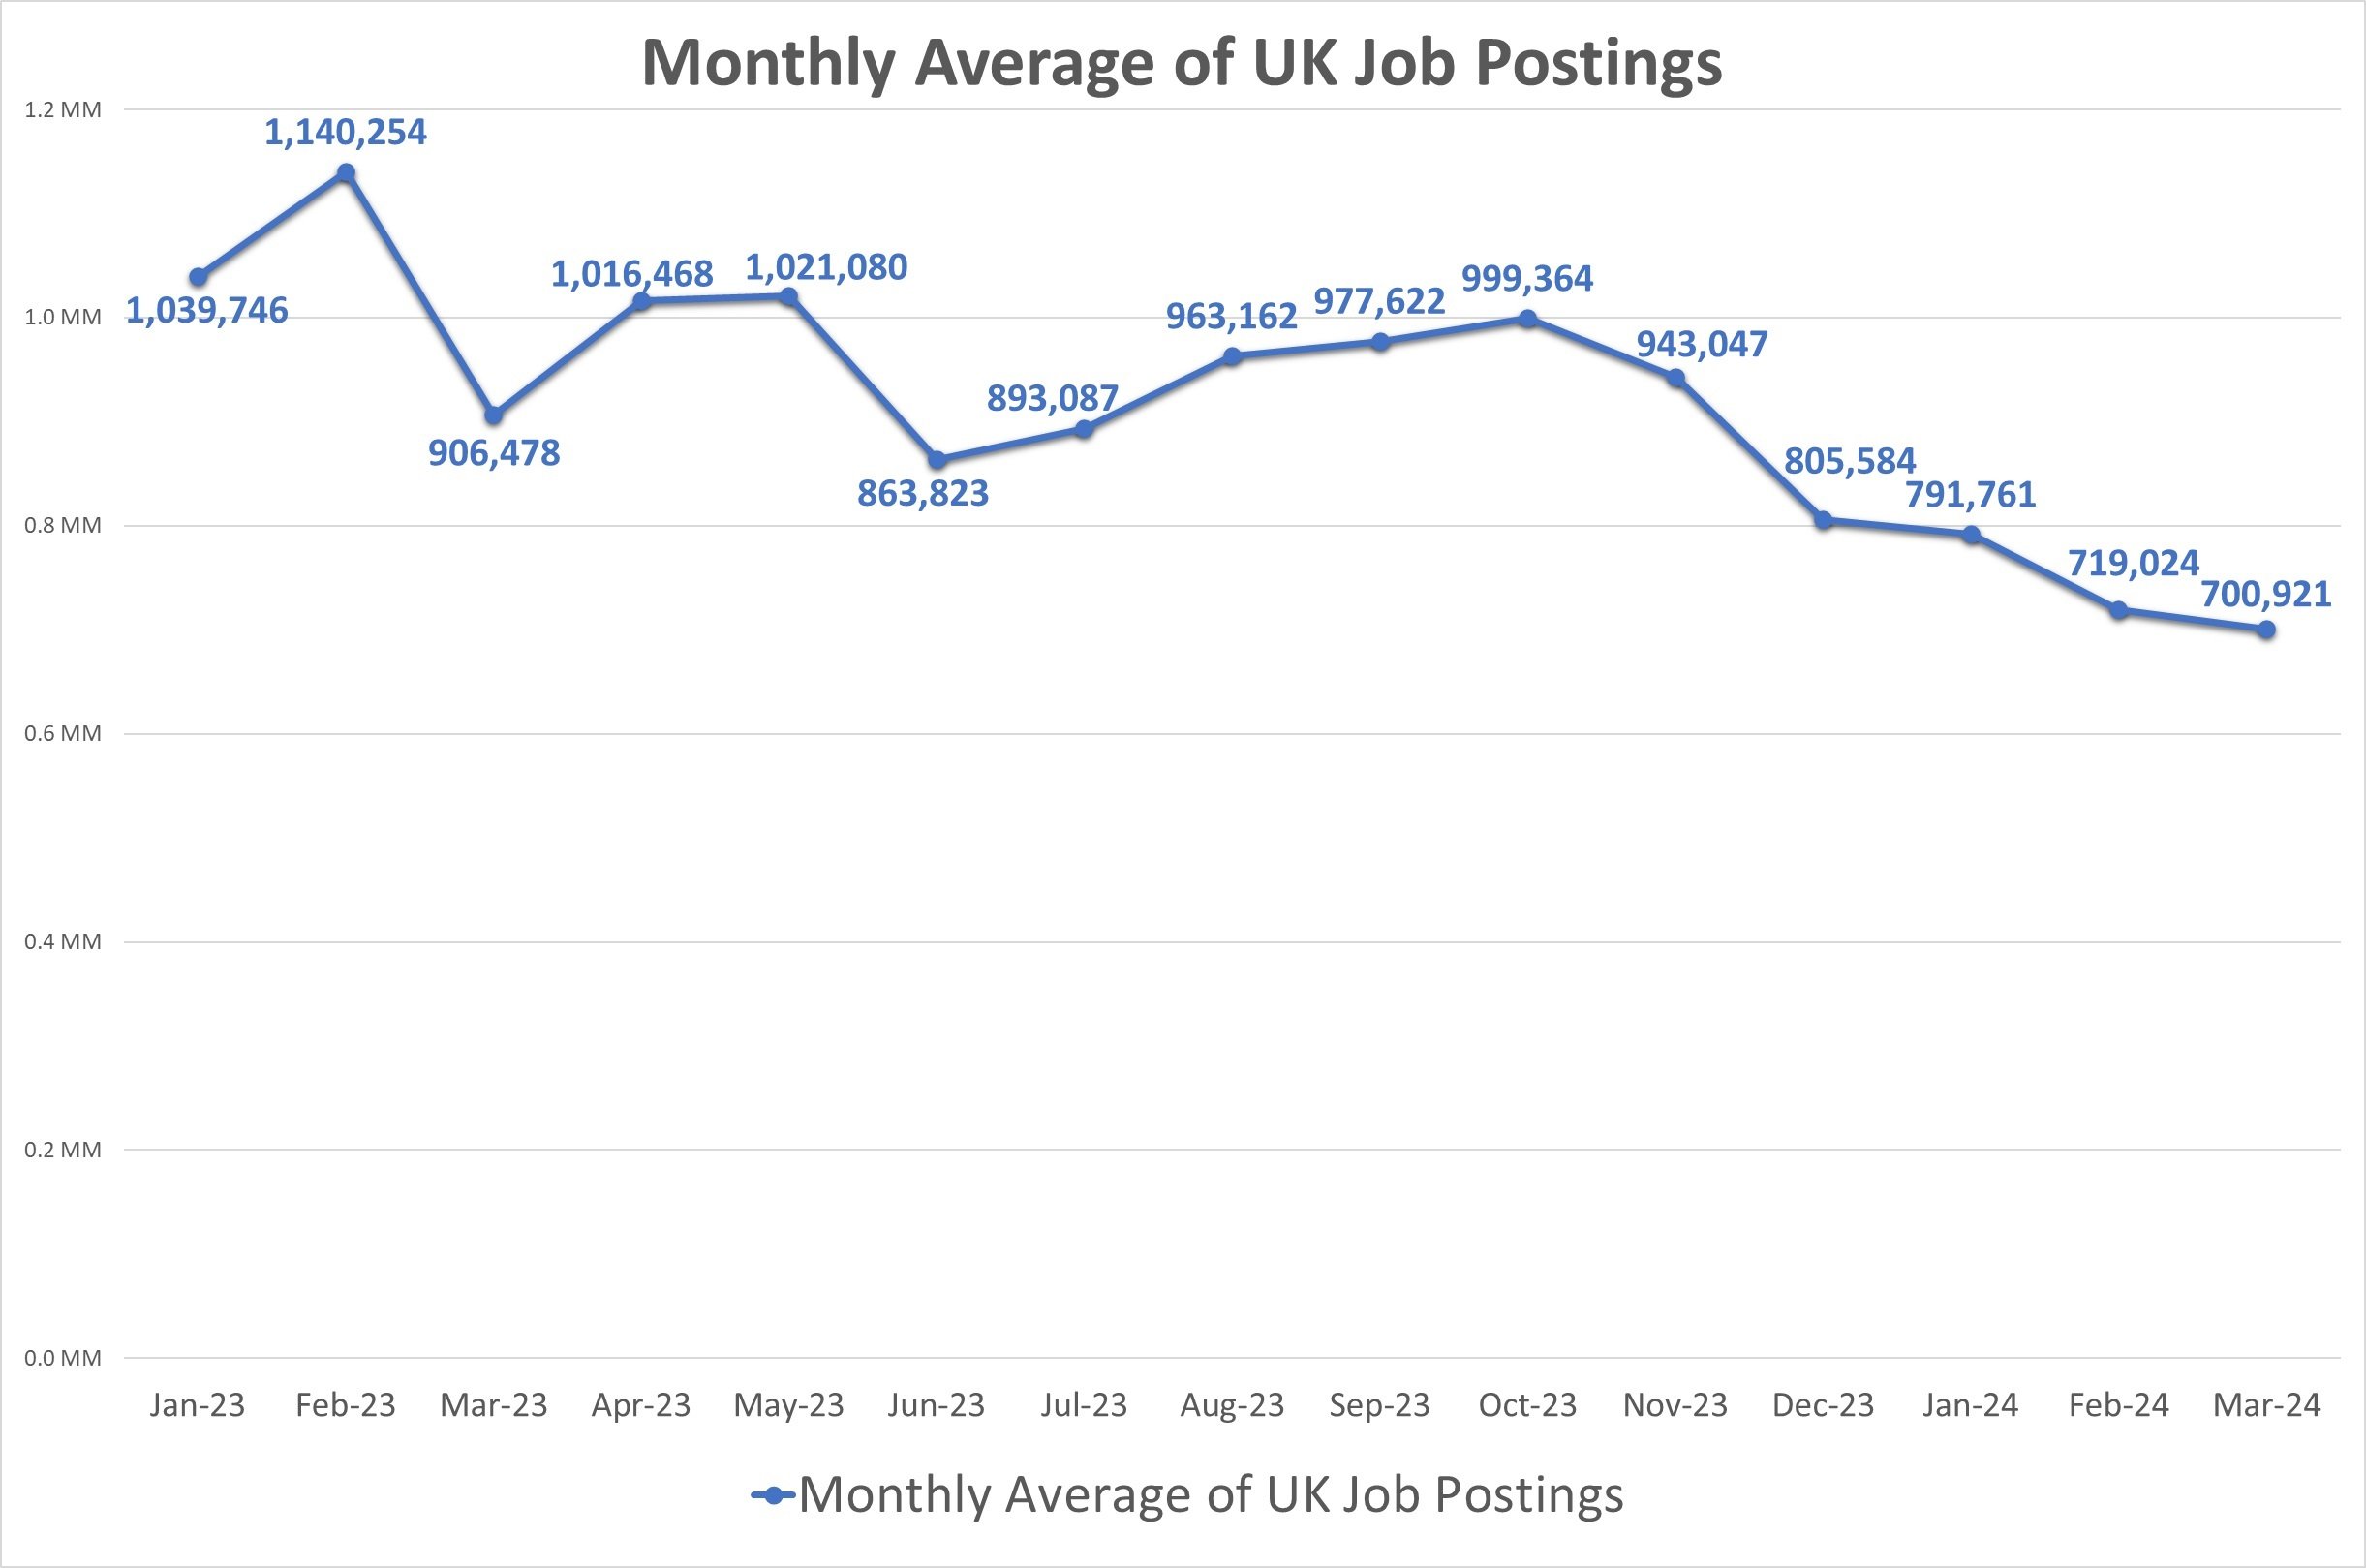 UK job postings